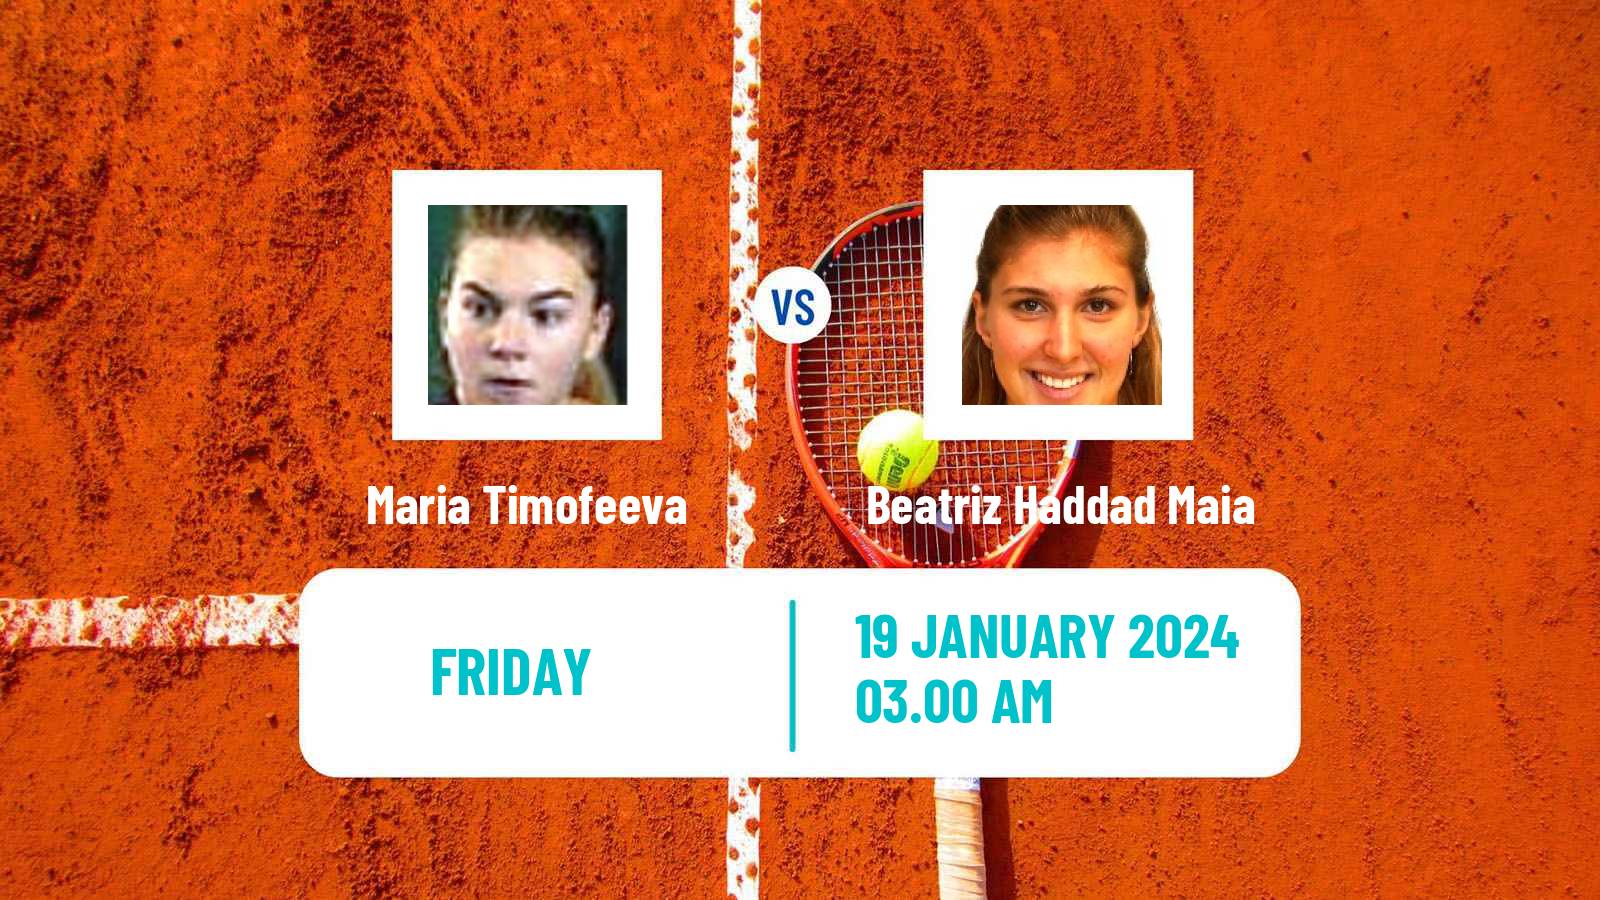 Tennis WTA Australian Open Maria Timofeeva - Beatriz Haddad Maia